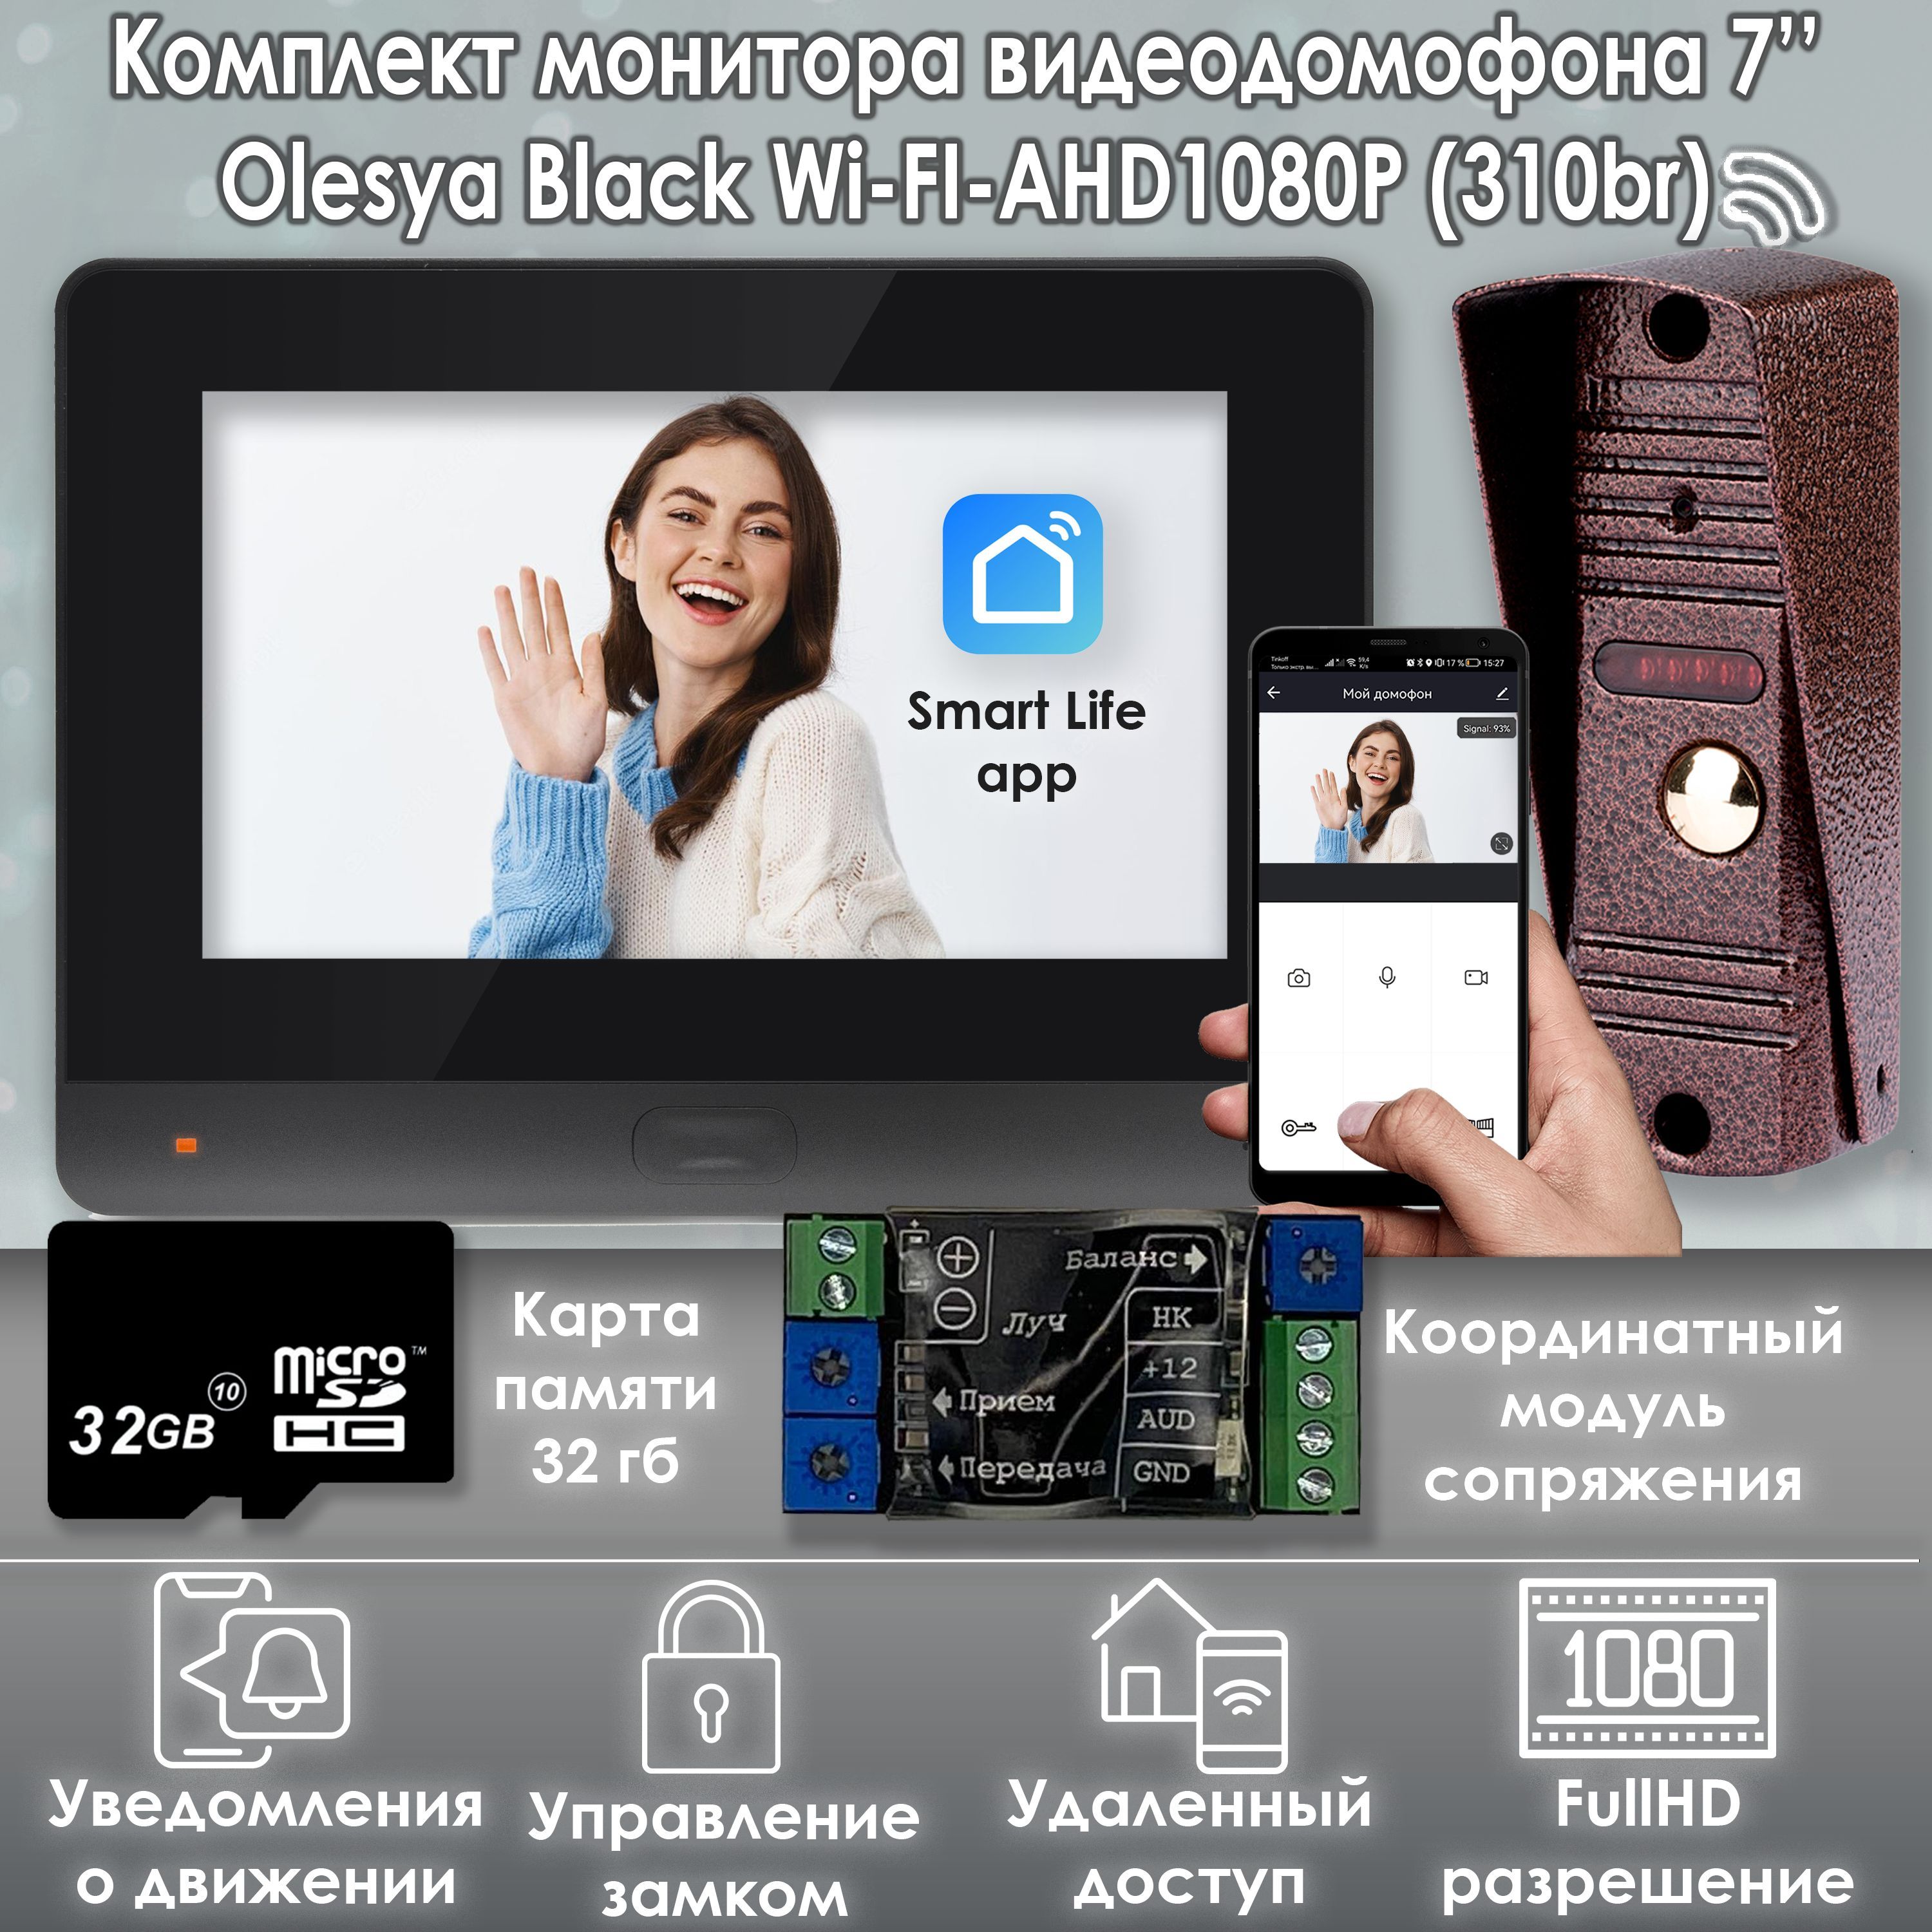 Комплект видеодомофона Alfavision Olesya Wi-Fi AHD1080P Full HD (310br), Черный